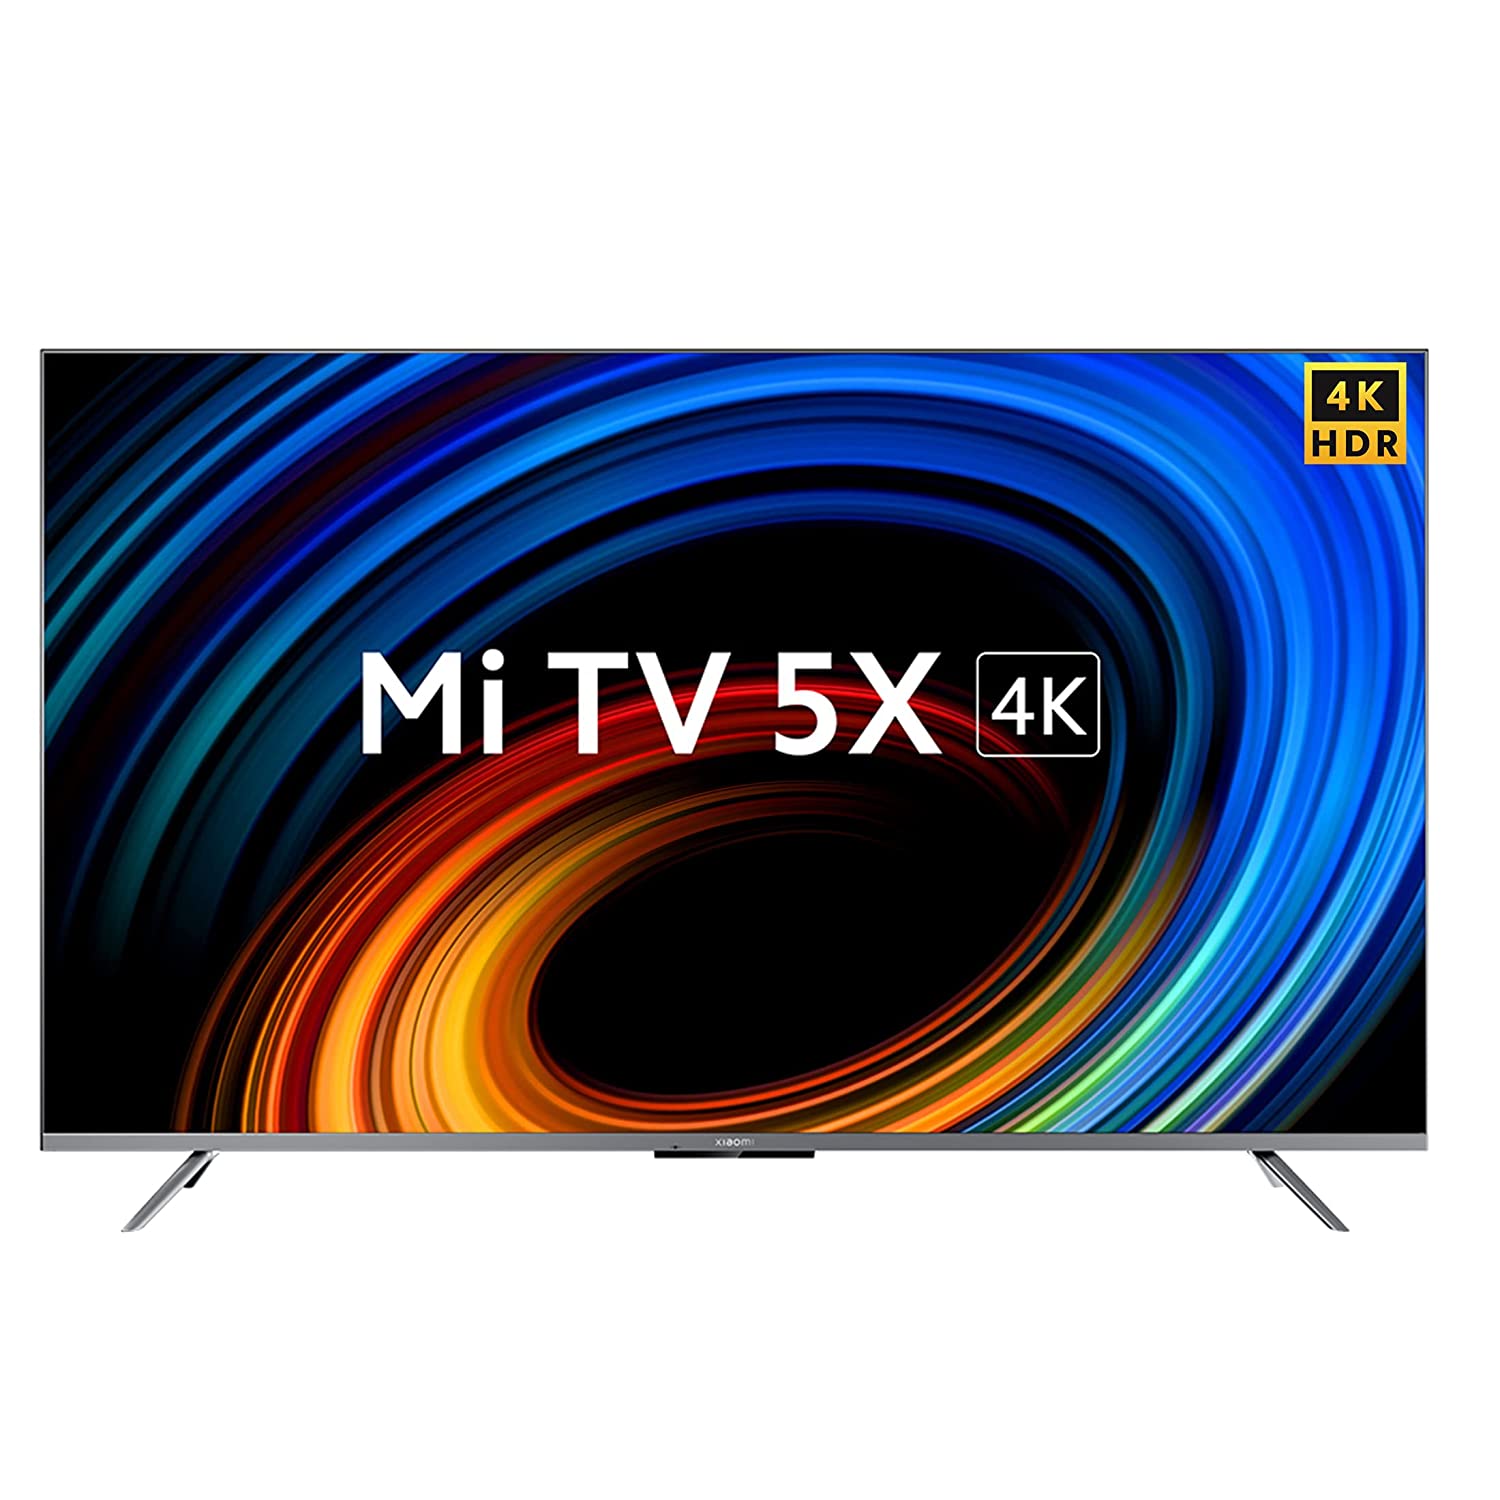 Best TV Offer: Amazon ने वीकेंड पर Mi के स्मार्ट टीवी कर दिये हैं सबसे सस्ते, जानिये क्या मिल रही है डील